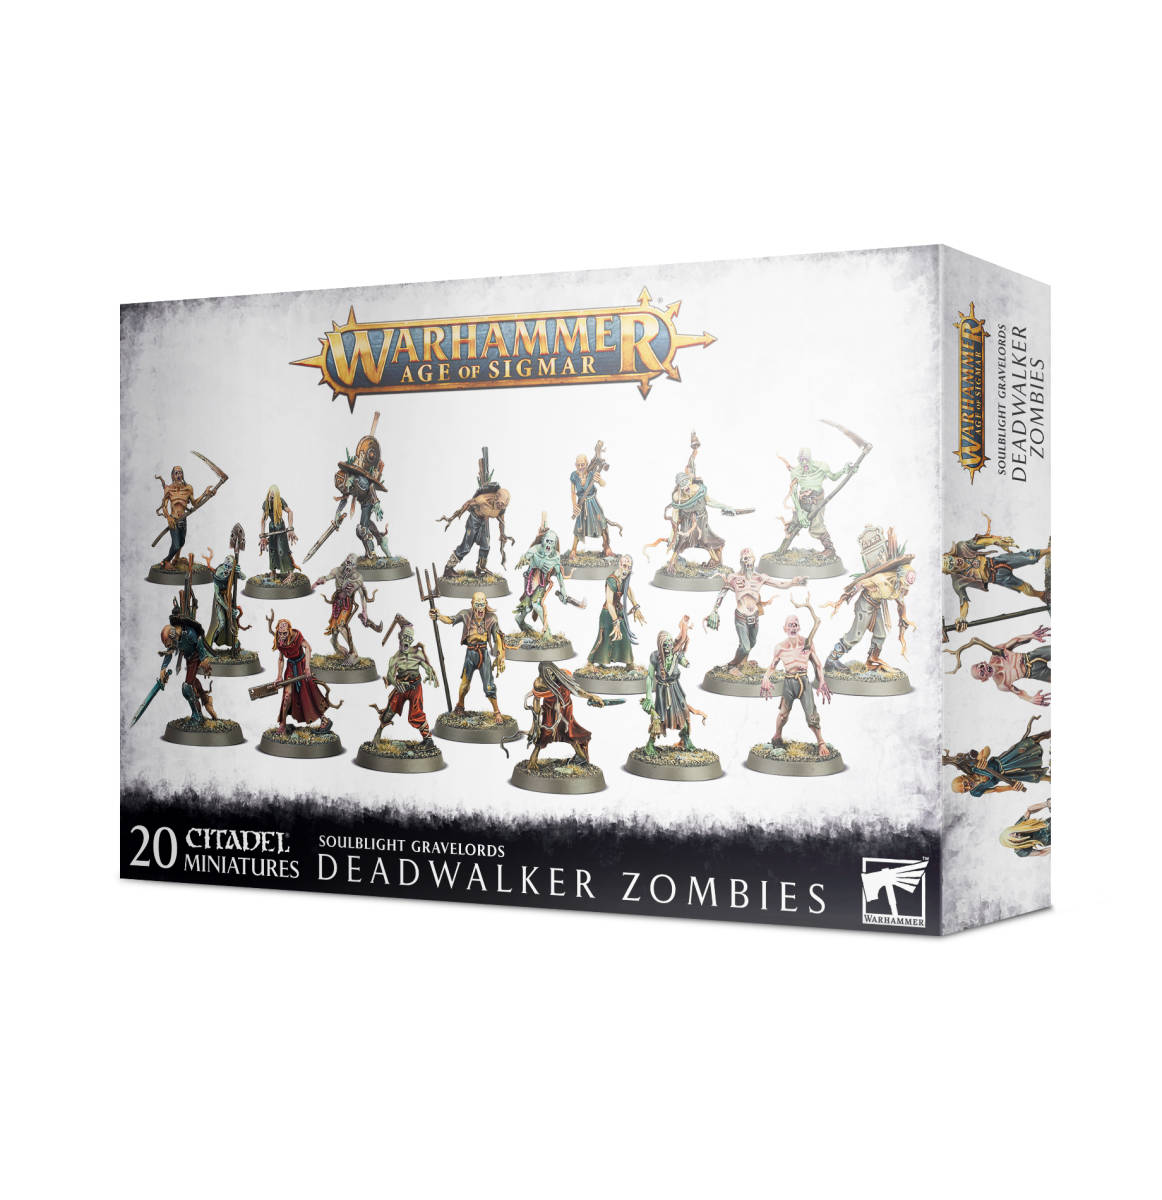 送料無料 新品 デッドウォーカー・ゾンビ ウォーハンマー エイジオブシグマー / Deadwalker Zombies Warhammer AOS